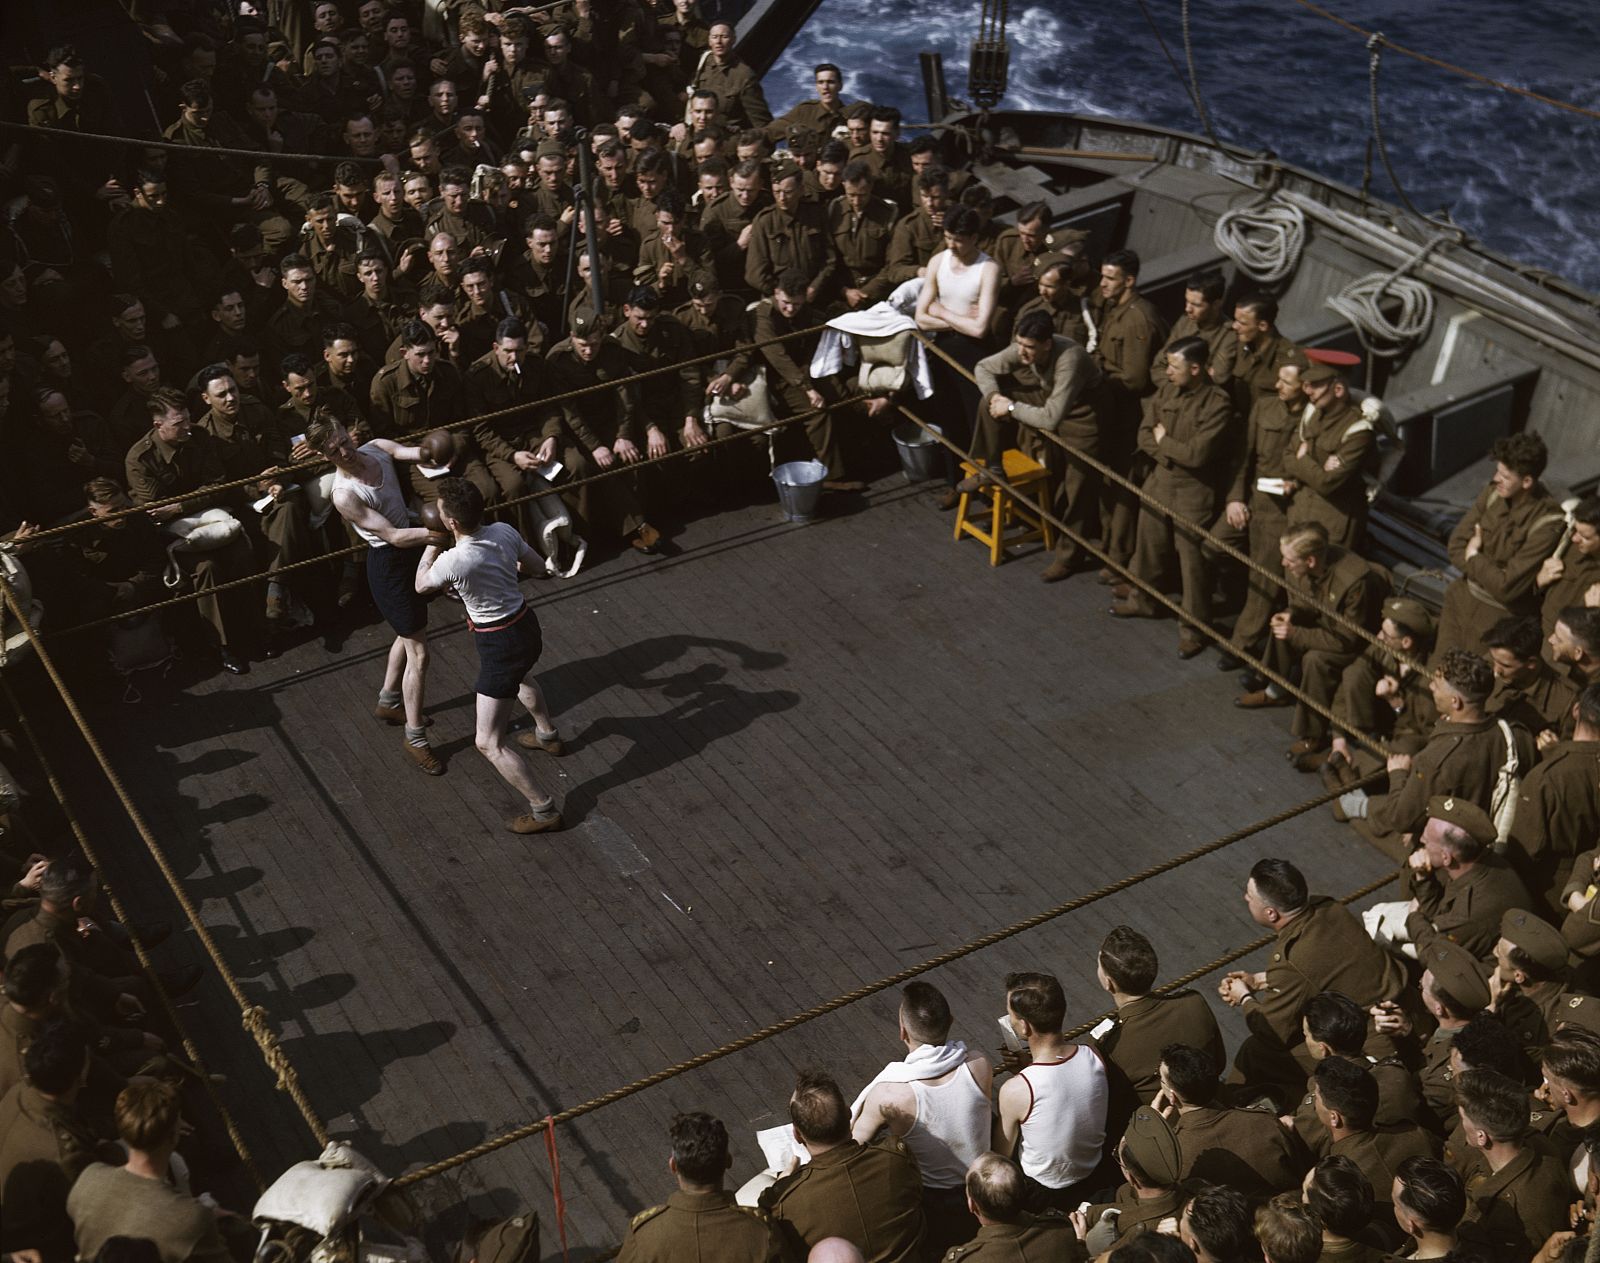 'Soldados británicos viendo un combate de boxeo en un barco de escuadrones de Inglaterra al Norte de África' (1943), de Robert Capa.